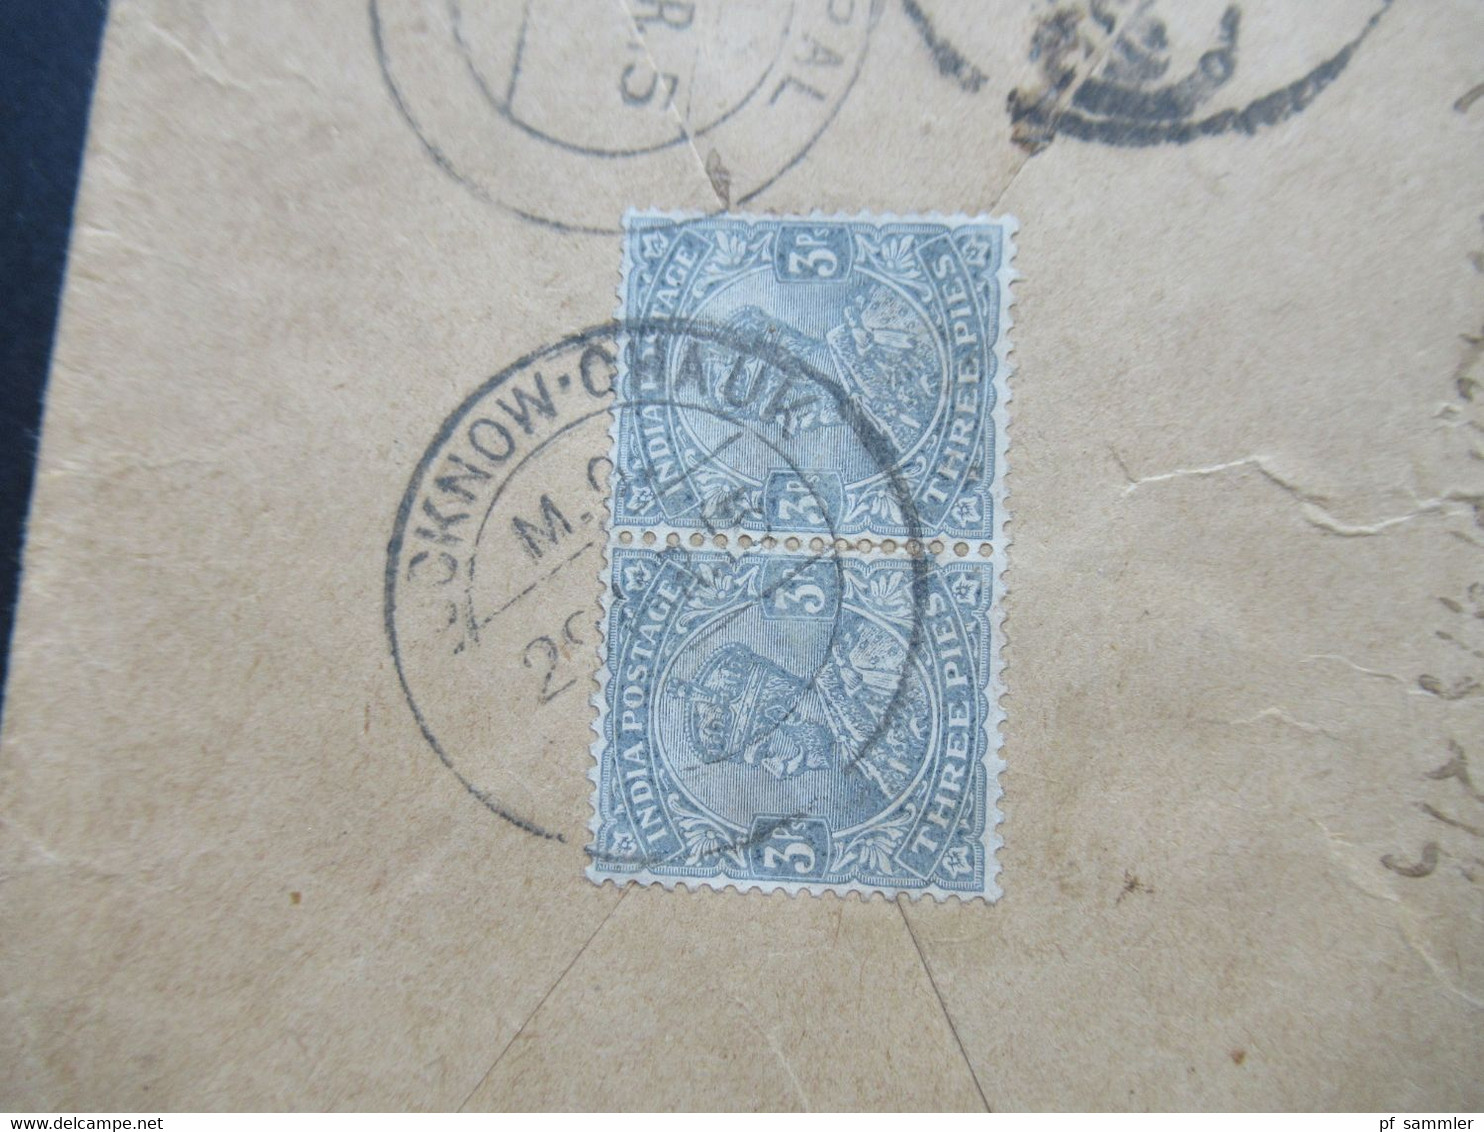 Indien / Nepal Umschlag Nach Nhubohal Nepal 1915 Ank. Stempel Nepal Und 2 Weitere Stempel - Nepal